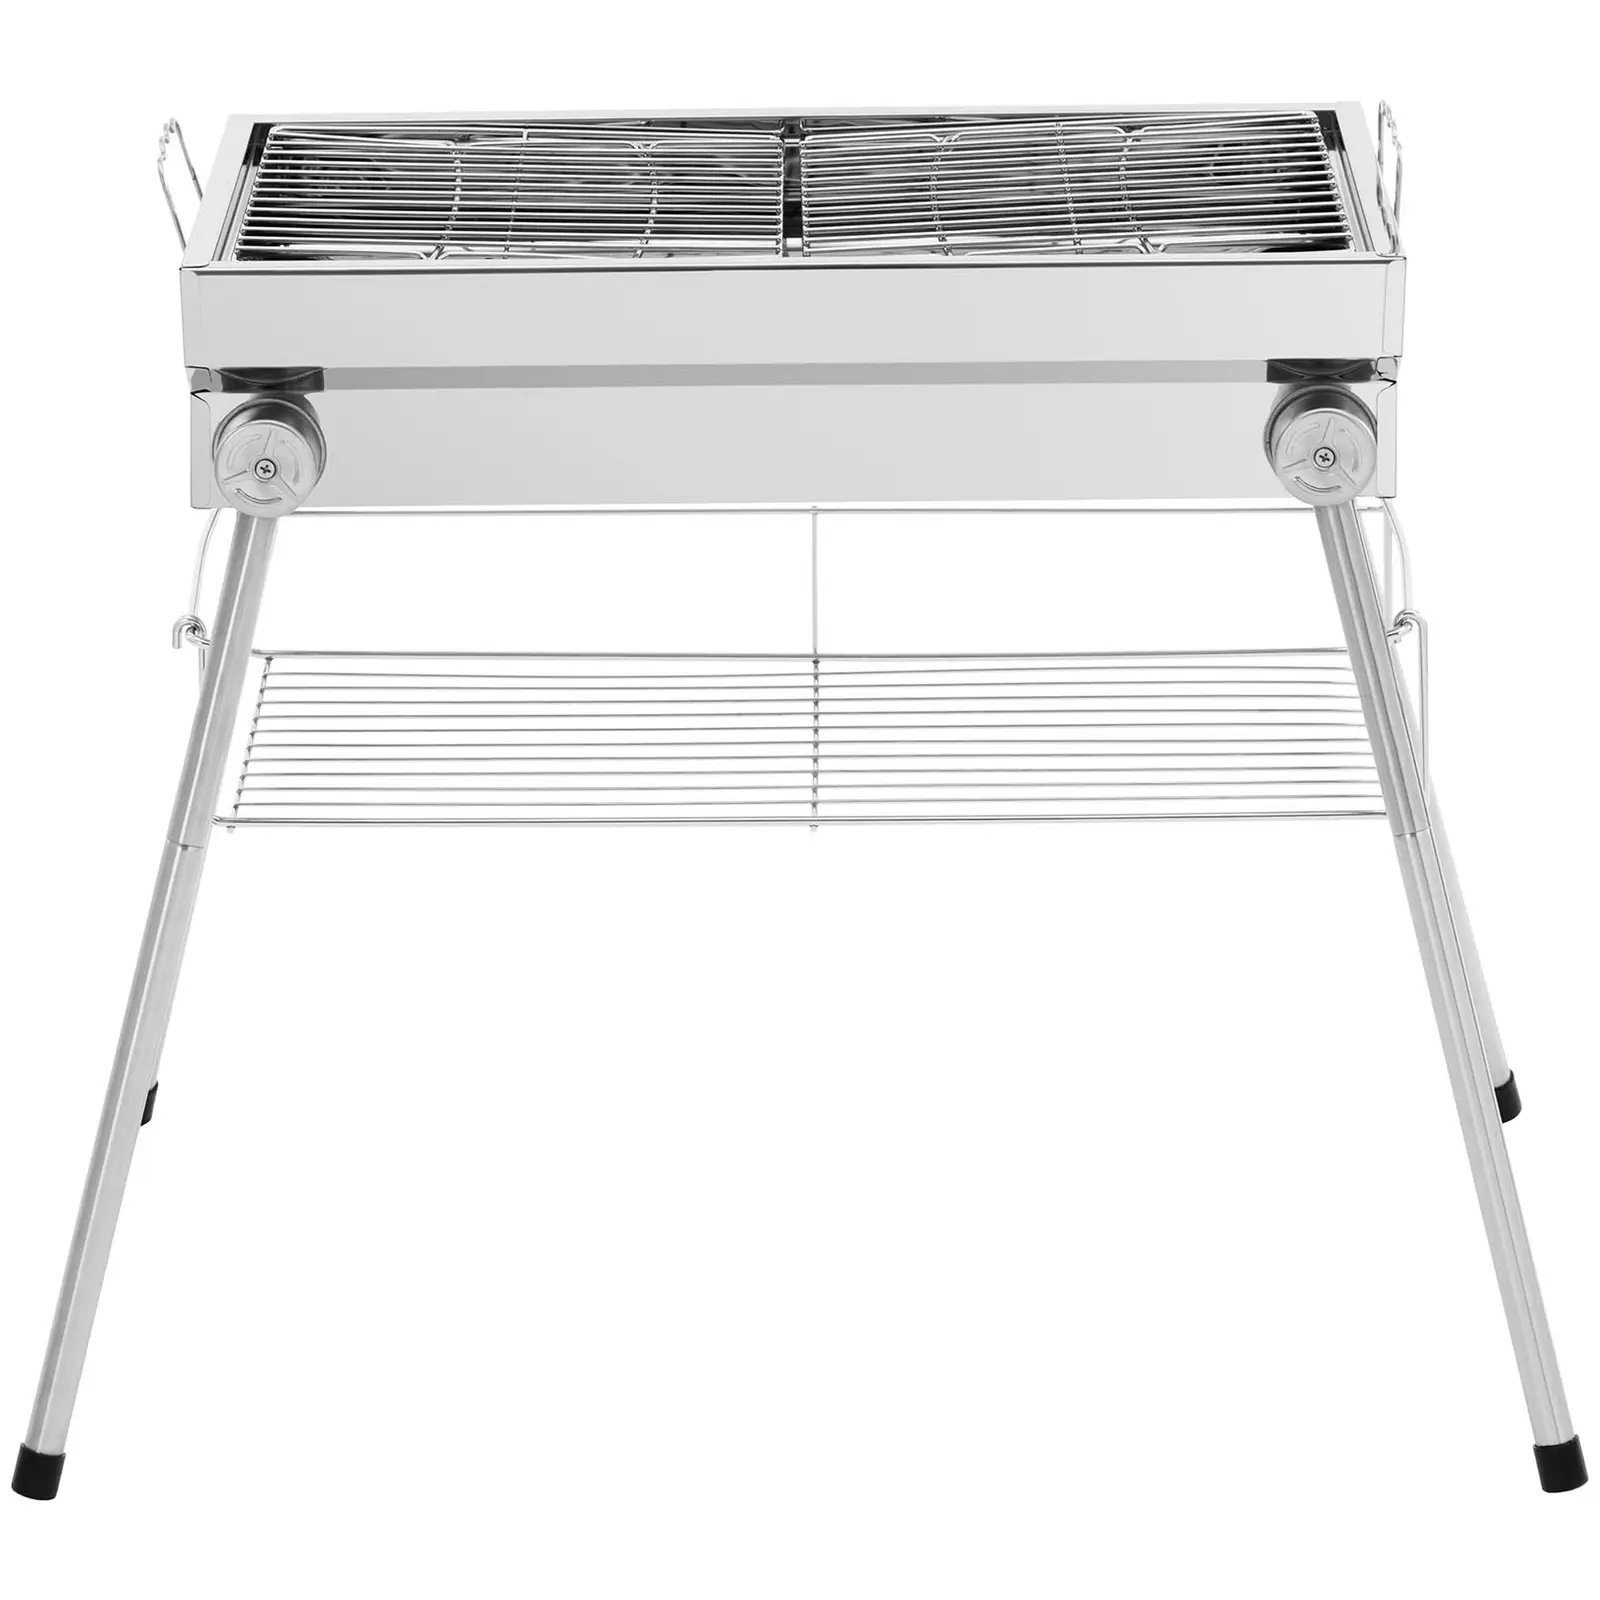 Barbecue au charbon de bois - tablette - grille rabattable- 53 x 26 cm - inox / acier - Royal Catering - 4